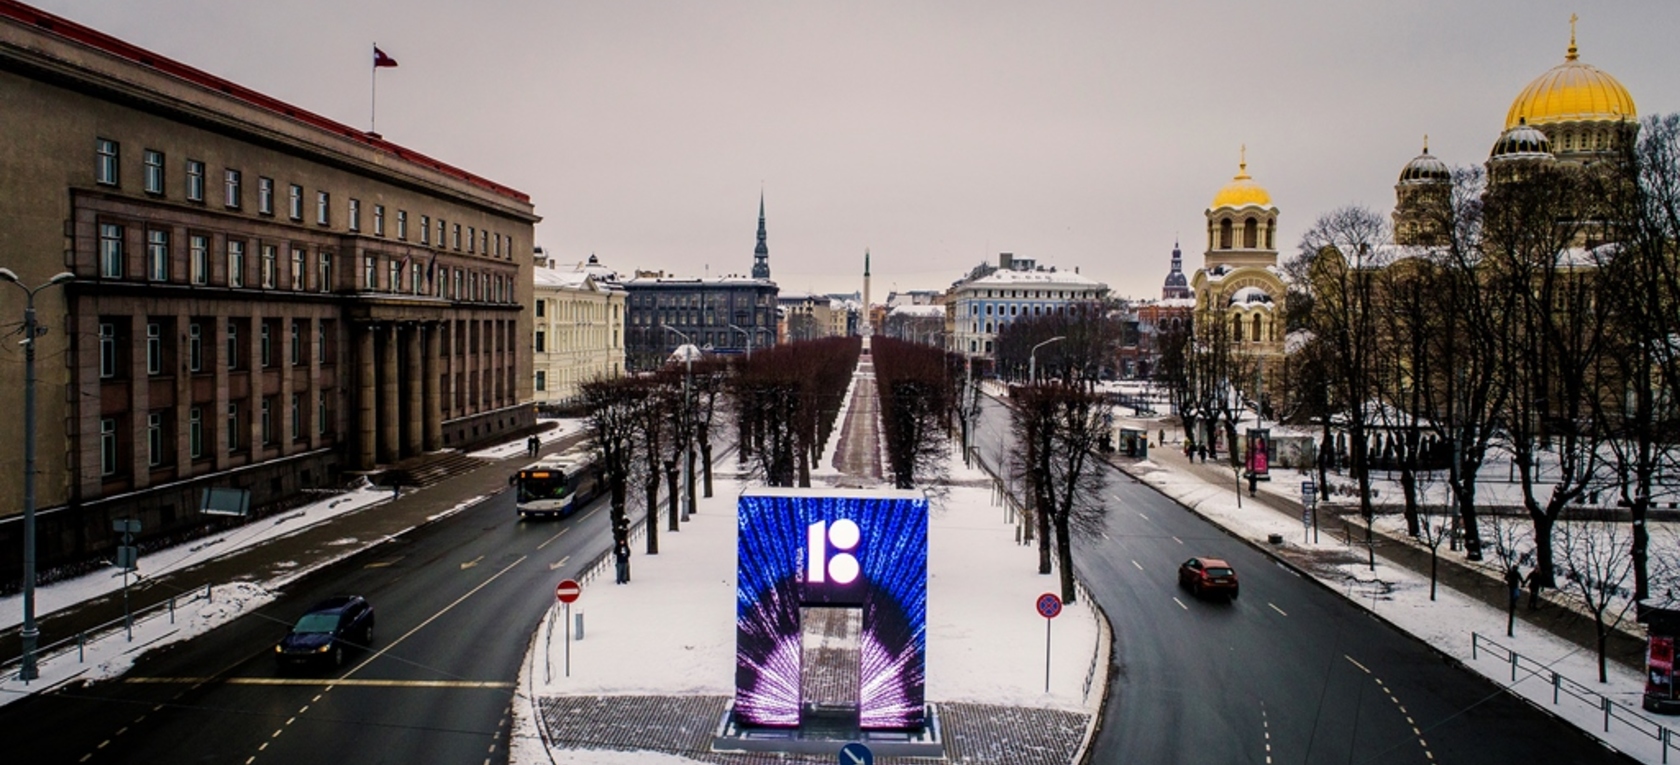 Vides mākslas objekts “Goda vārti” februārī stāsta par Baltijas valstu simtgadi